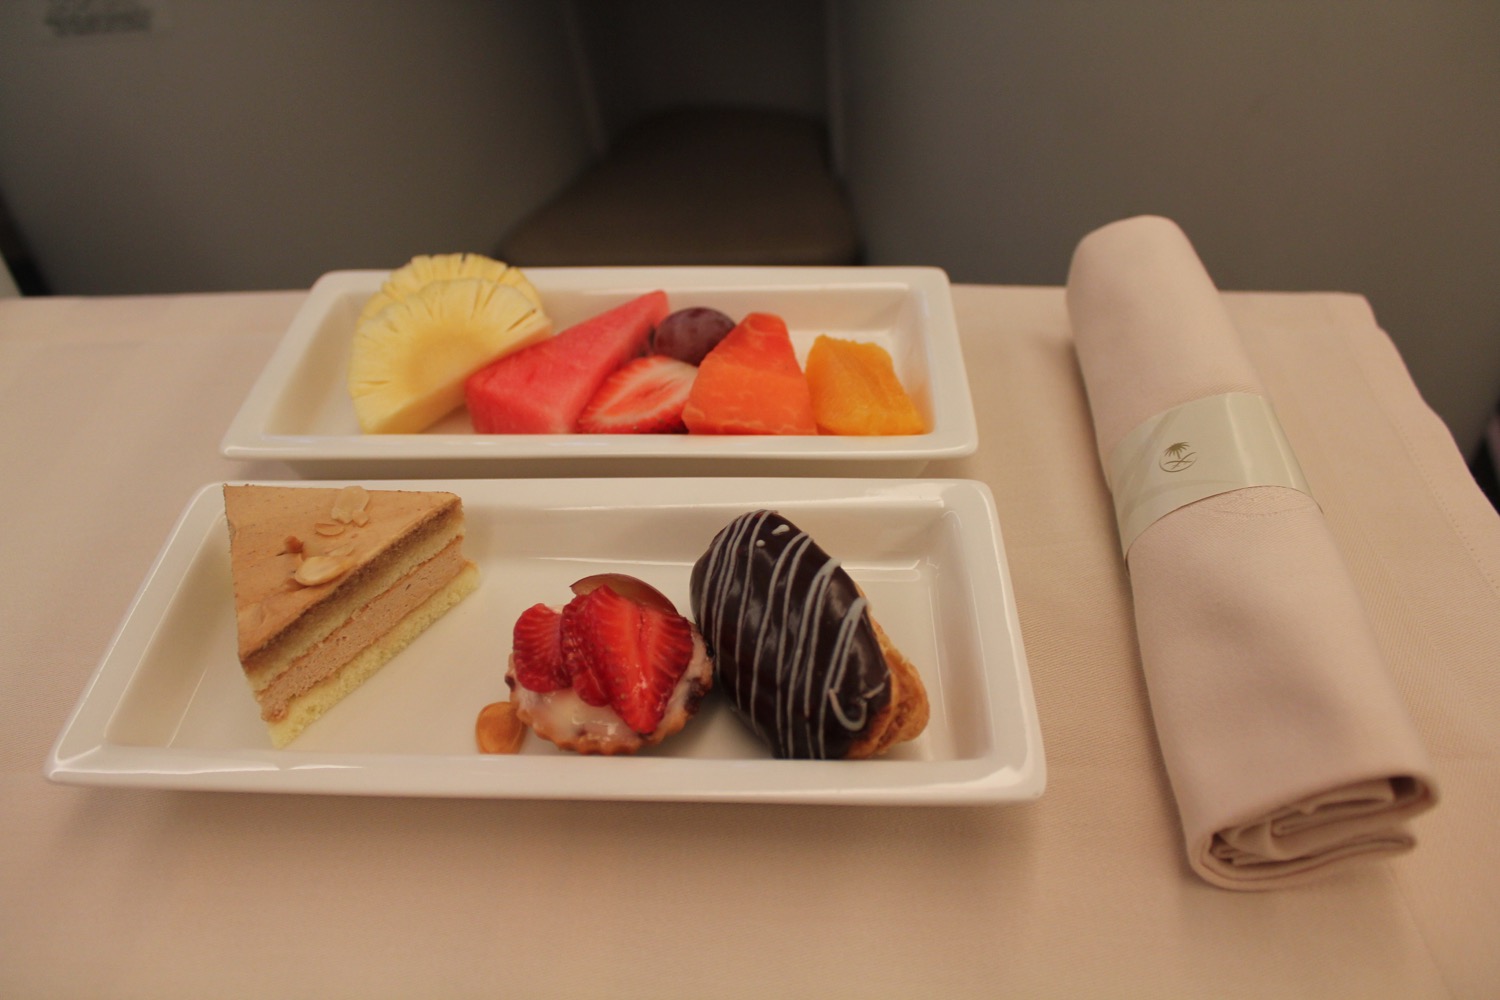 dessert plate and napkin